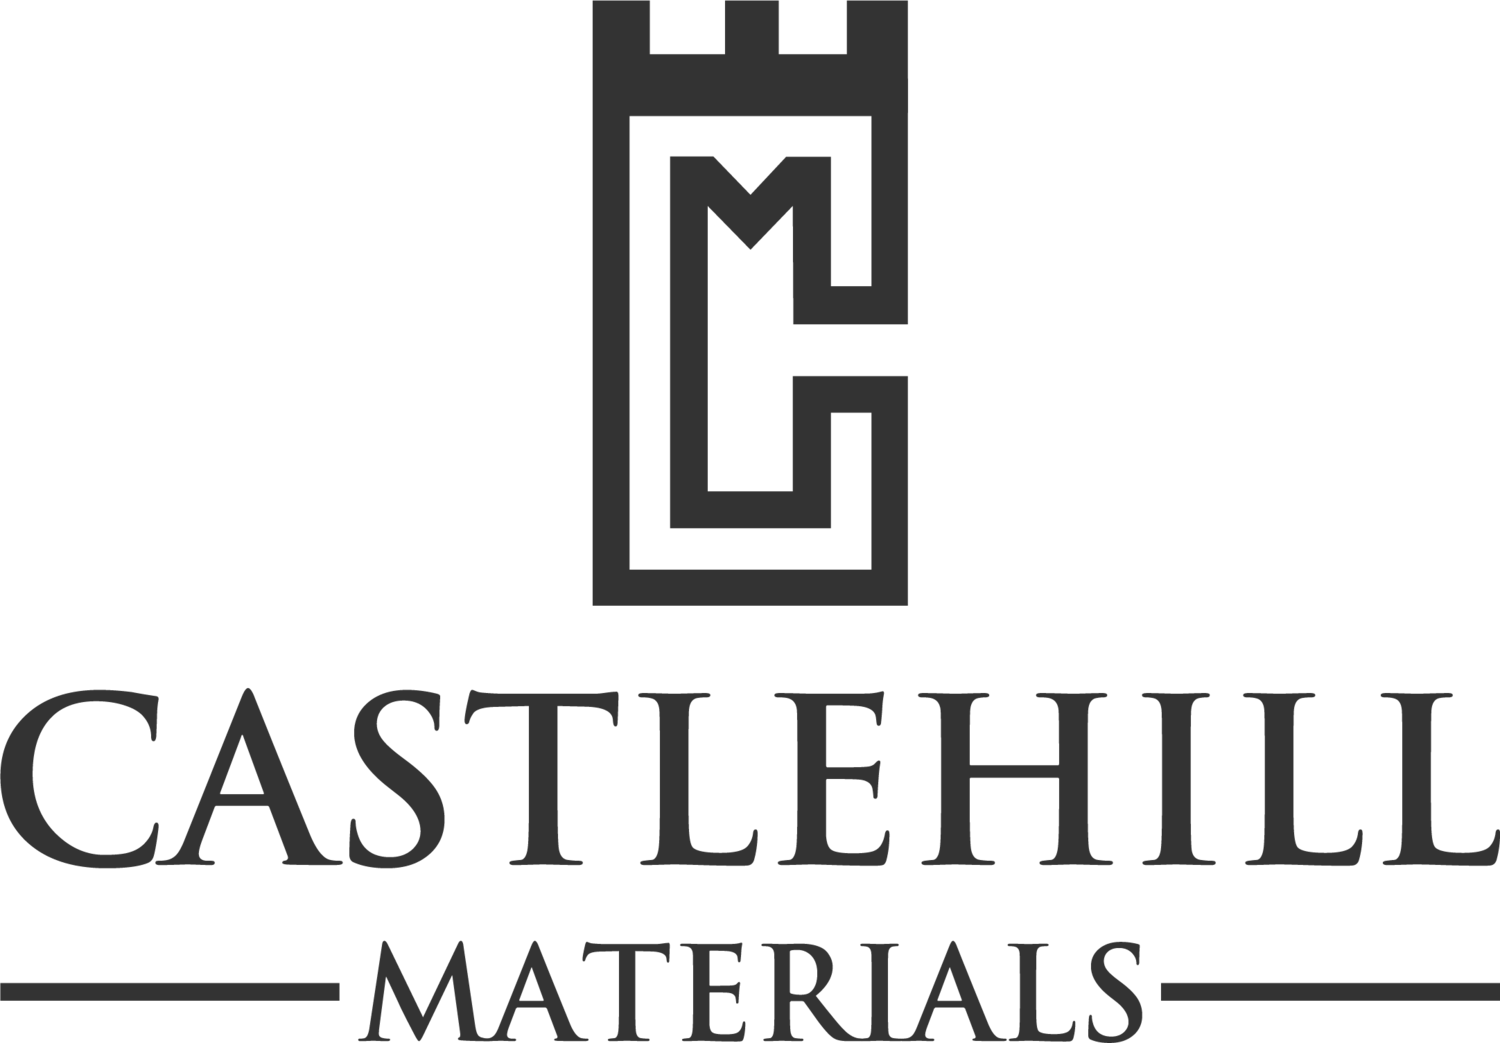 Castlehill Materials